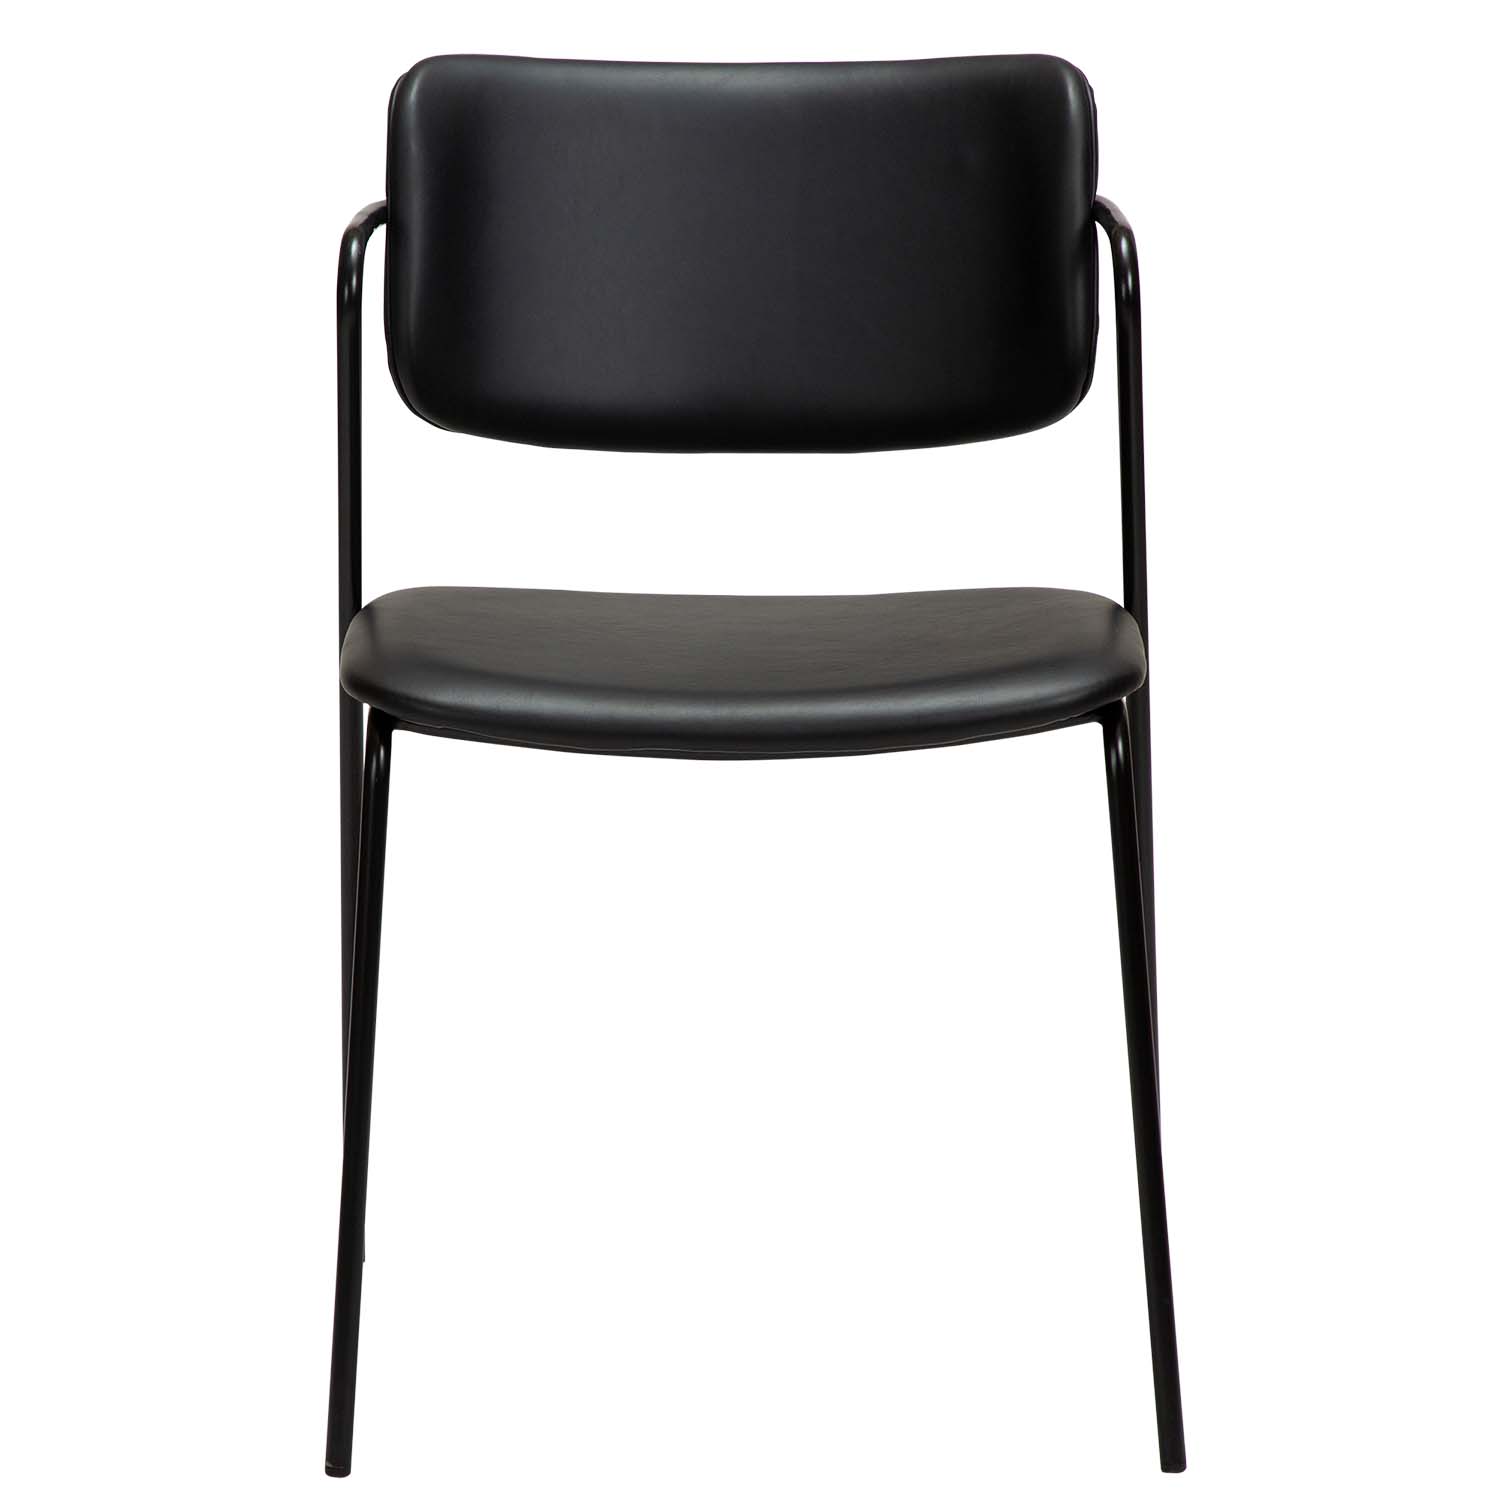 DAN-FORM Zed spisebordsstol, m. armlæn - sort kunstlæder og sort metal